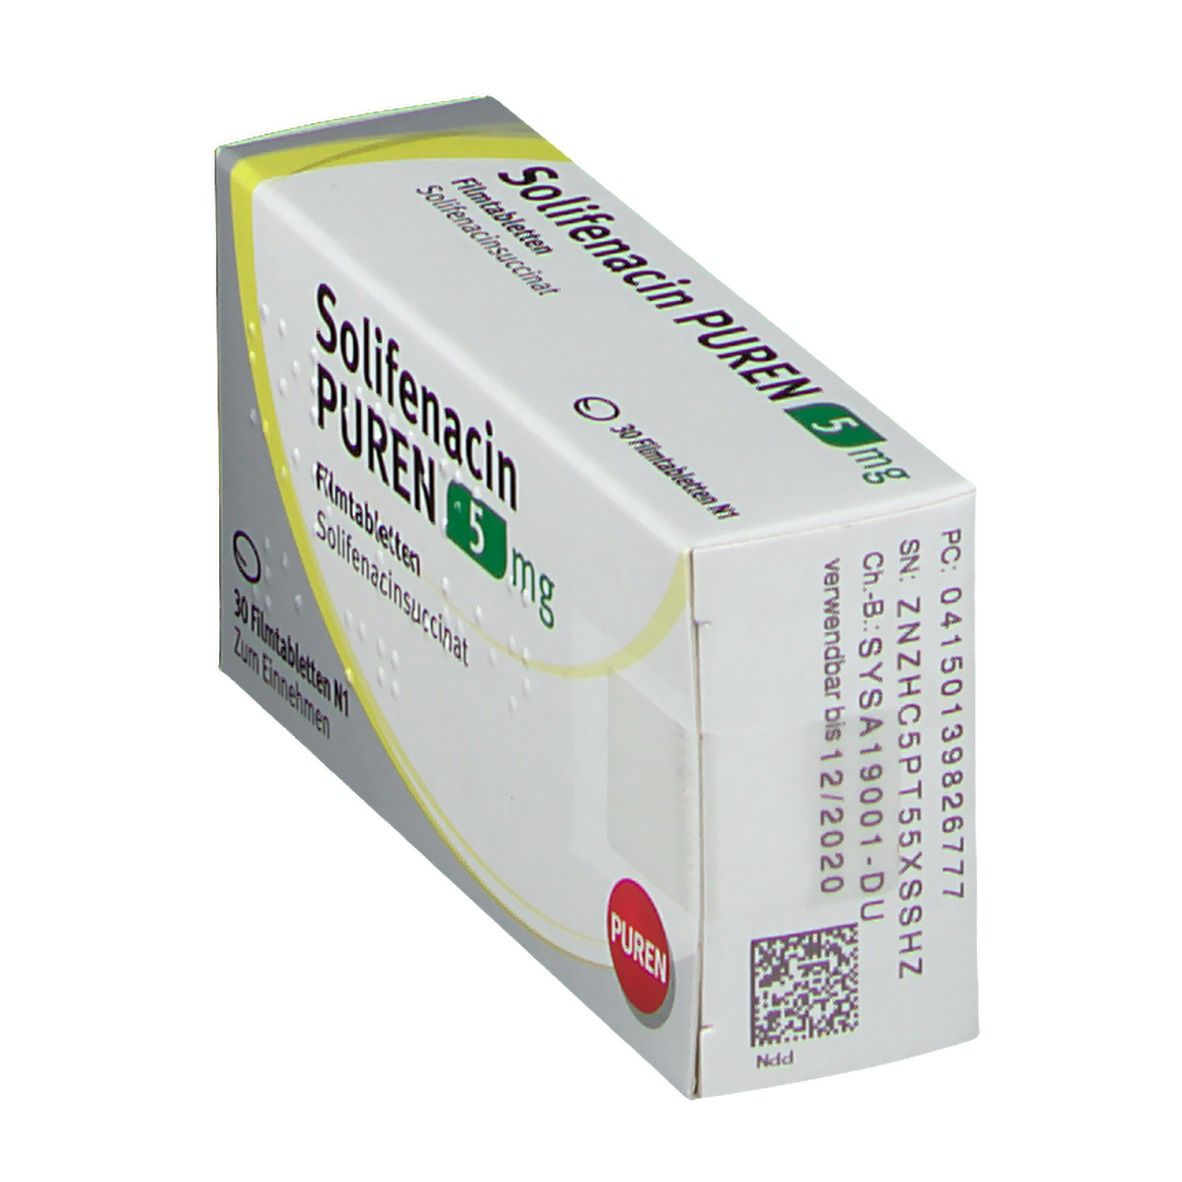 Solifenacin PUREN 5 mg